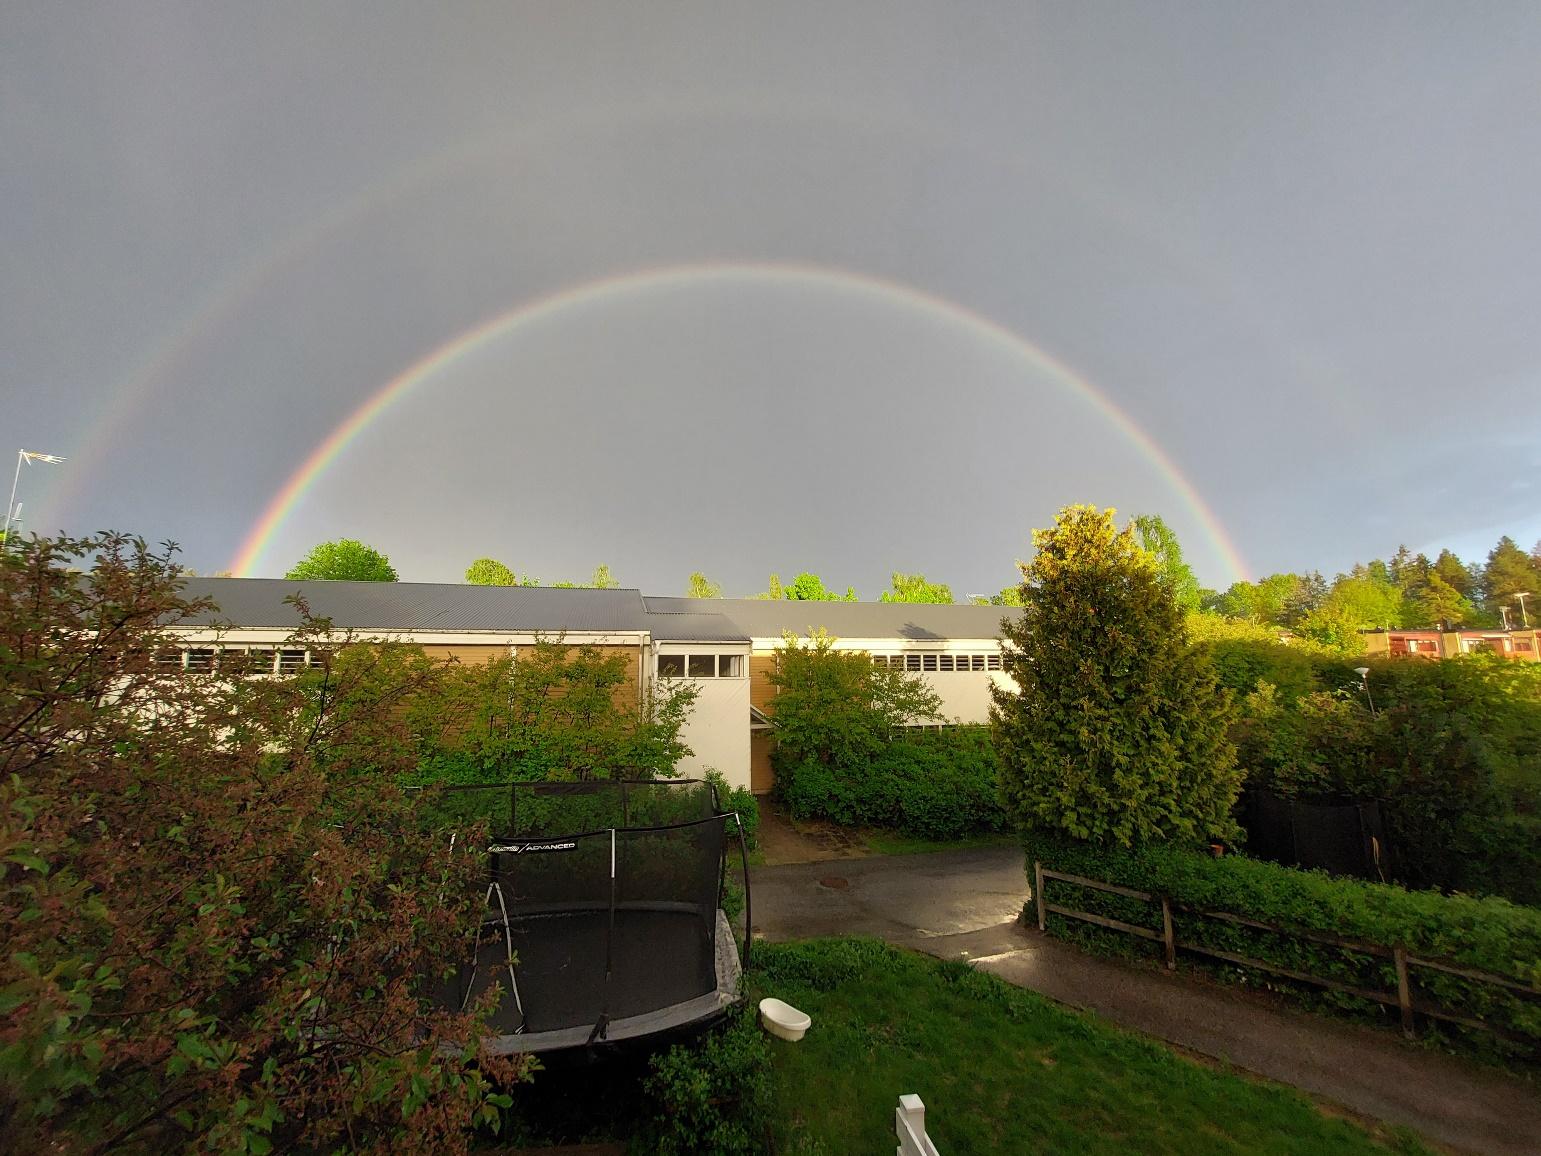 En bild som visar regnbåge, utomhus, himmel, natur

Automatiskt genererad beskrivning